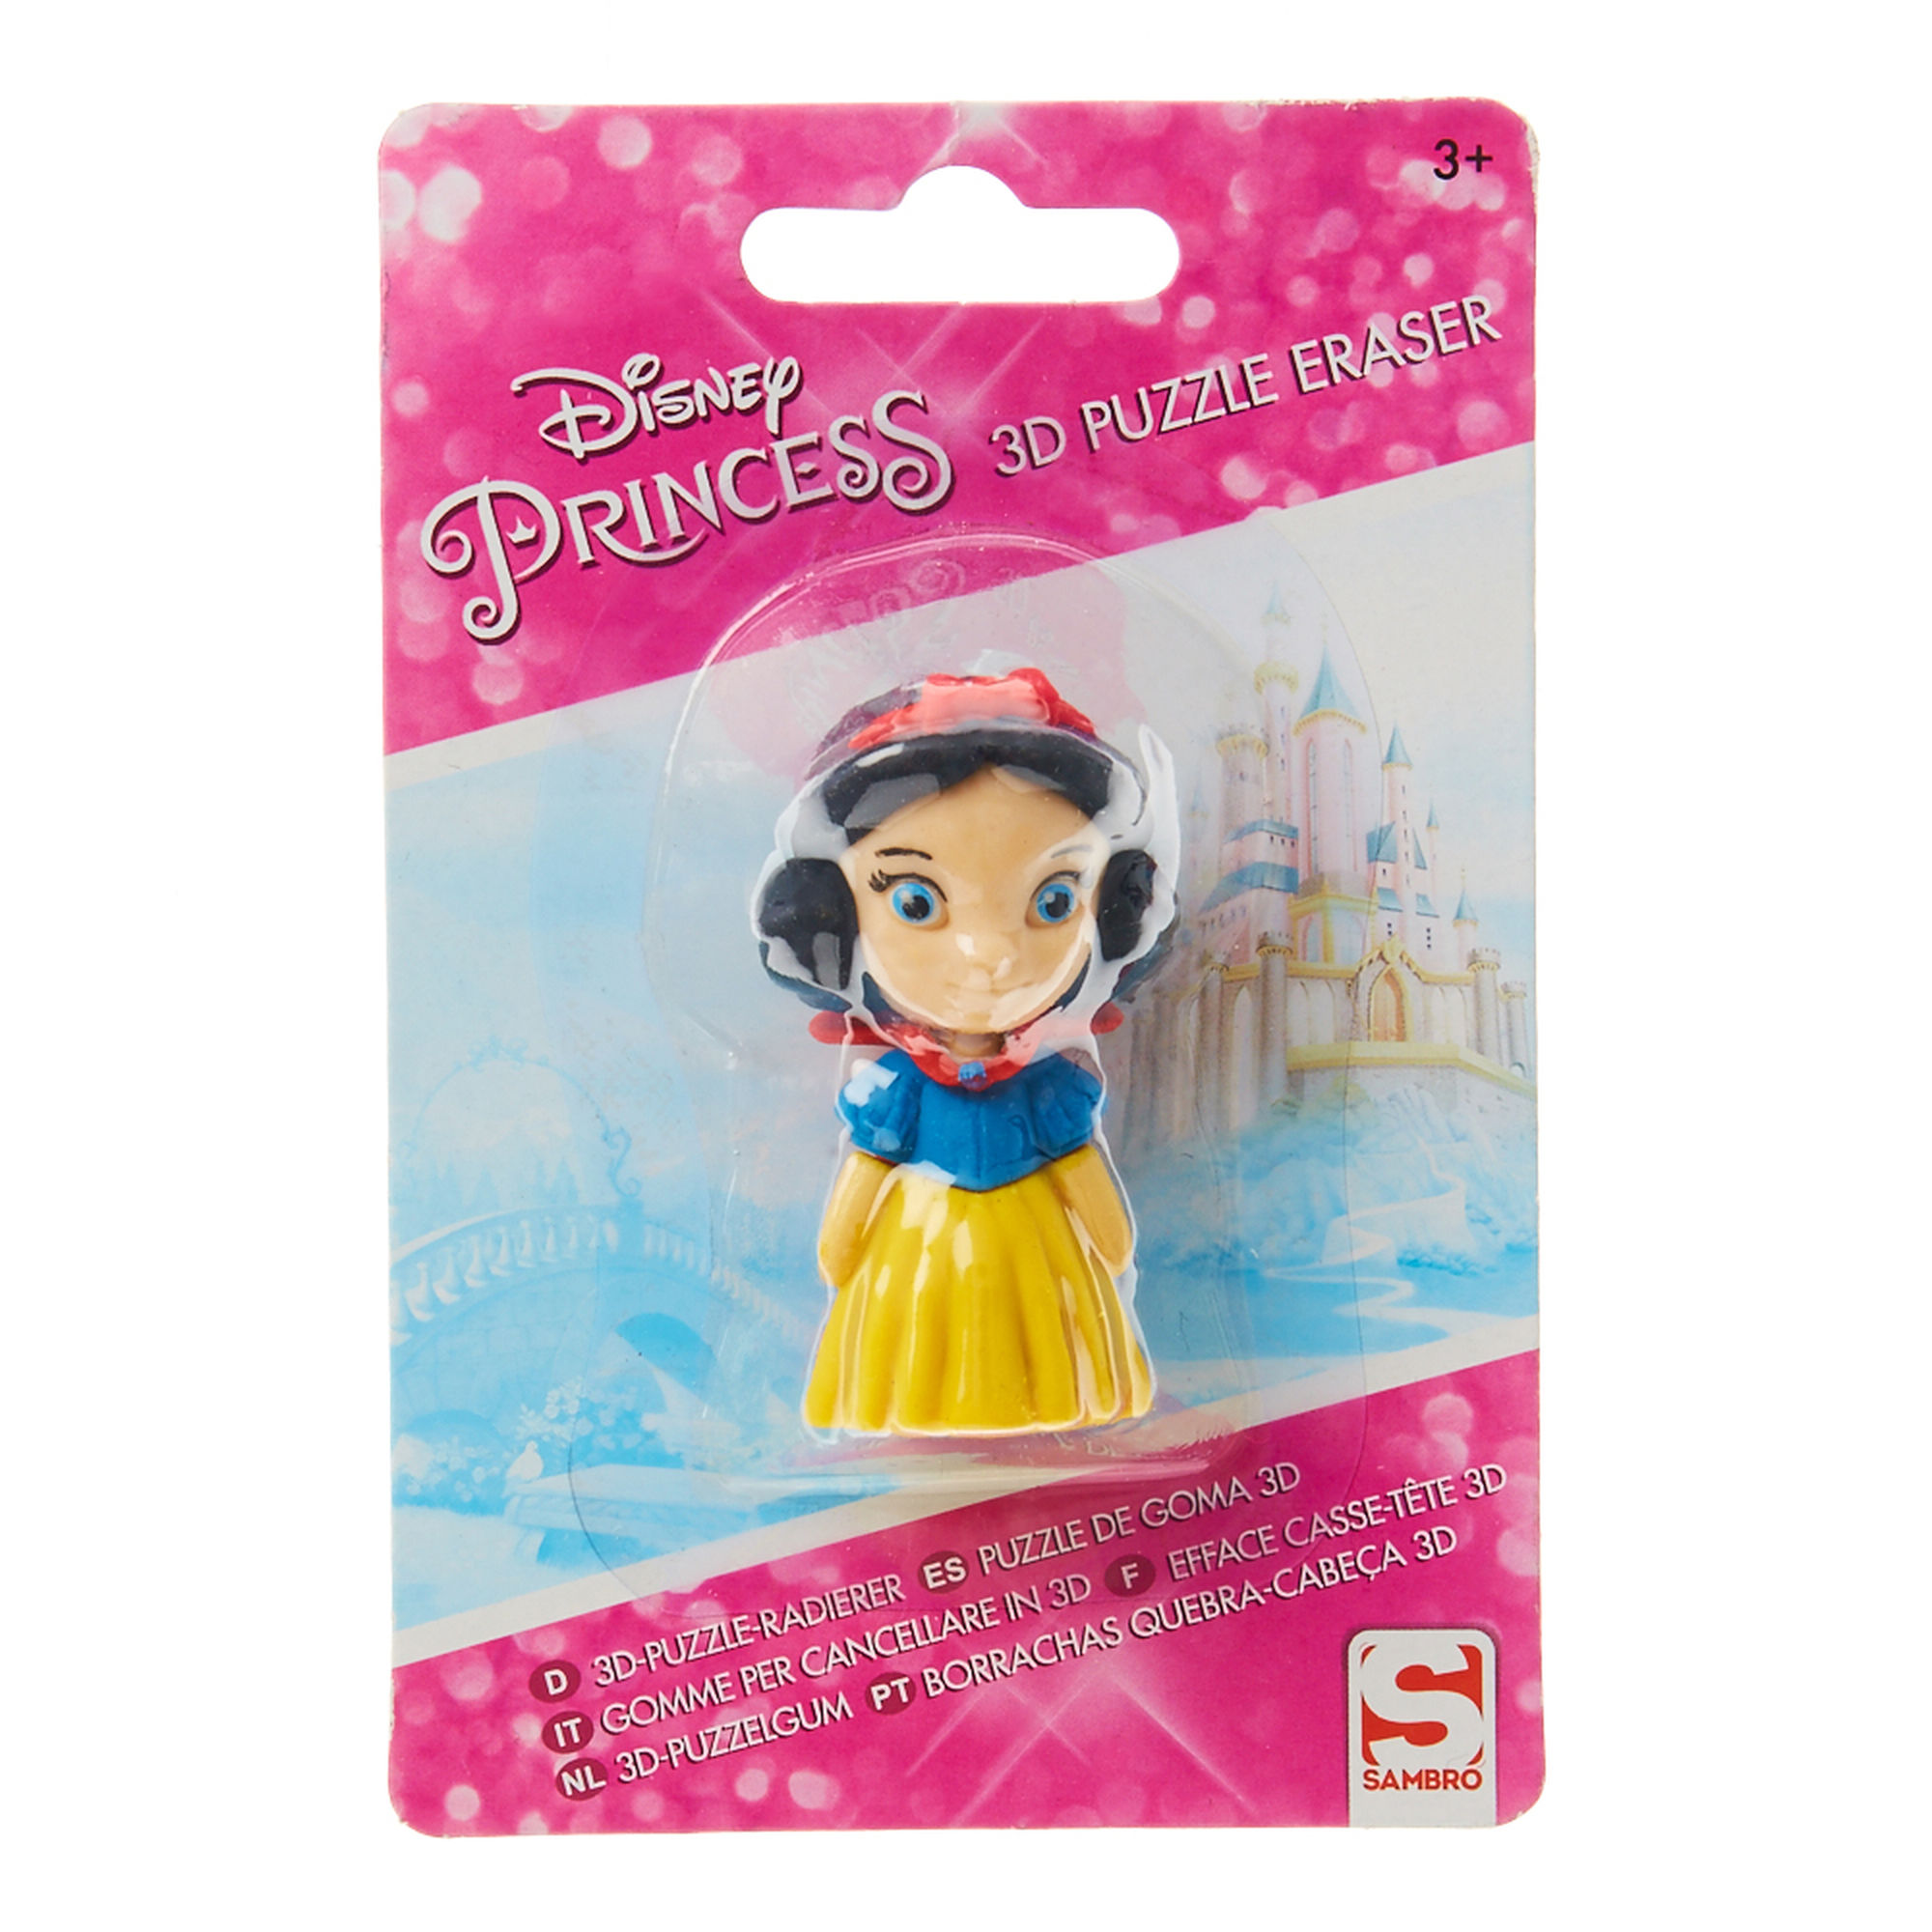 Disney Princess 3D Puzzle Eraser Belle/Snow White | Claire's